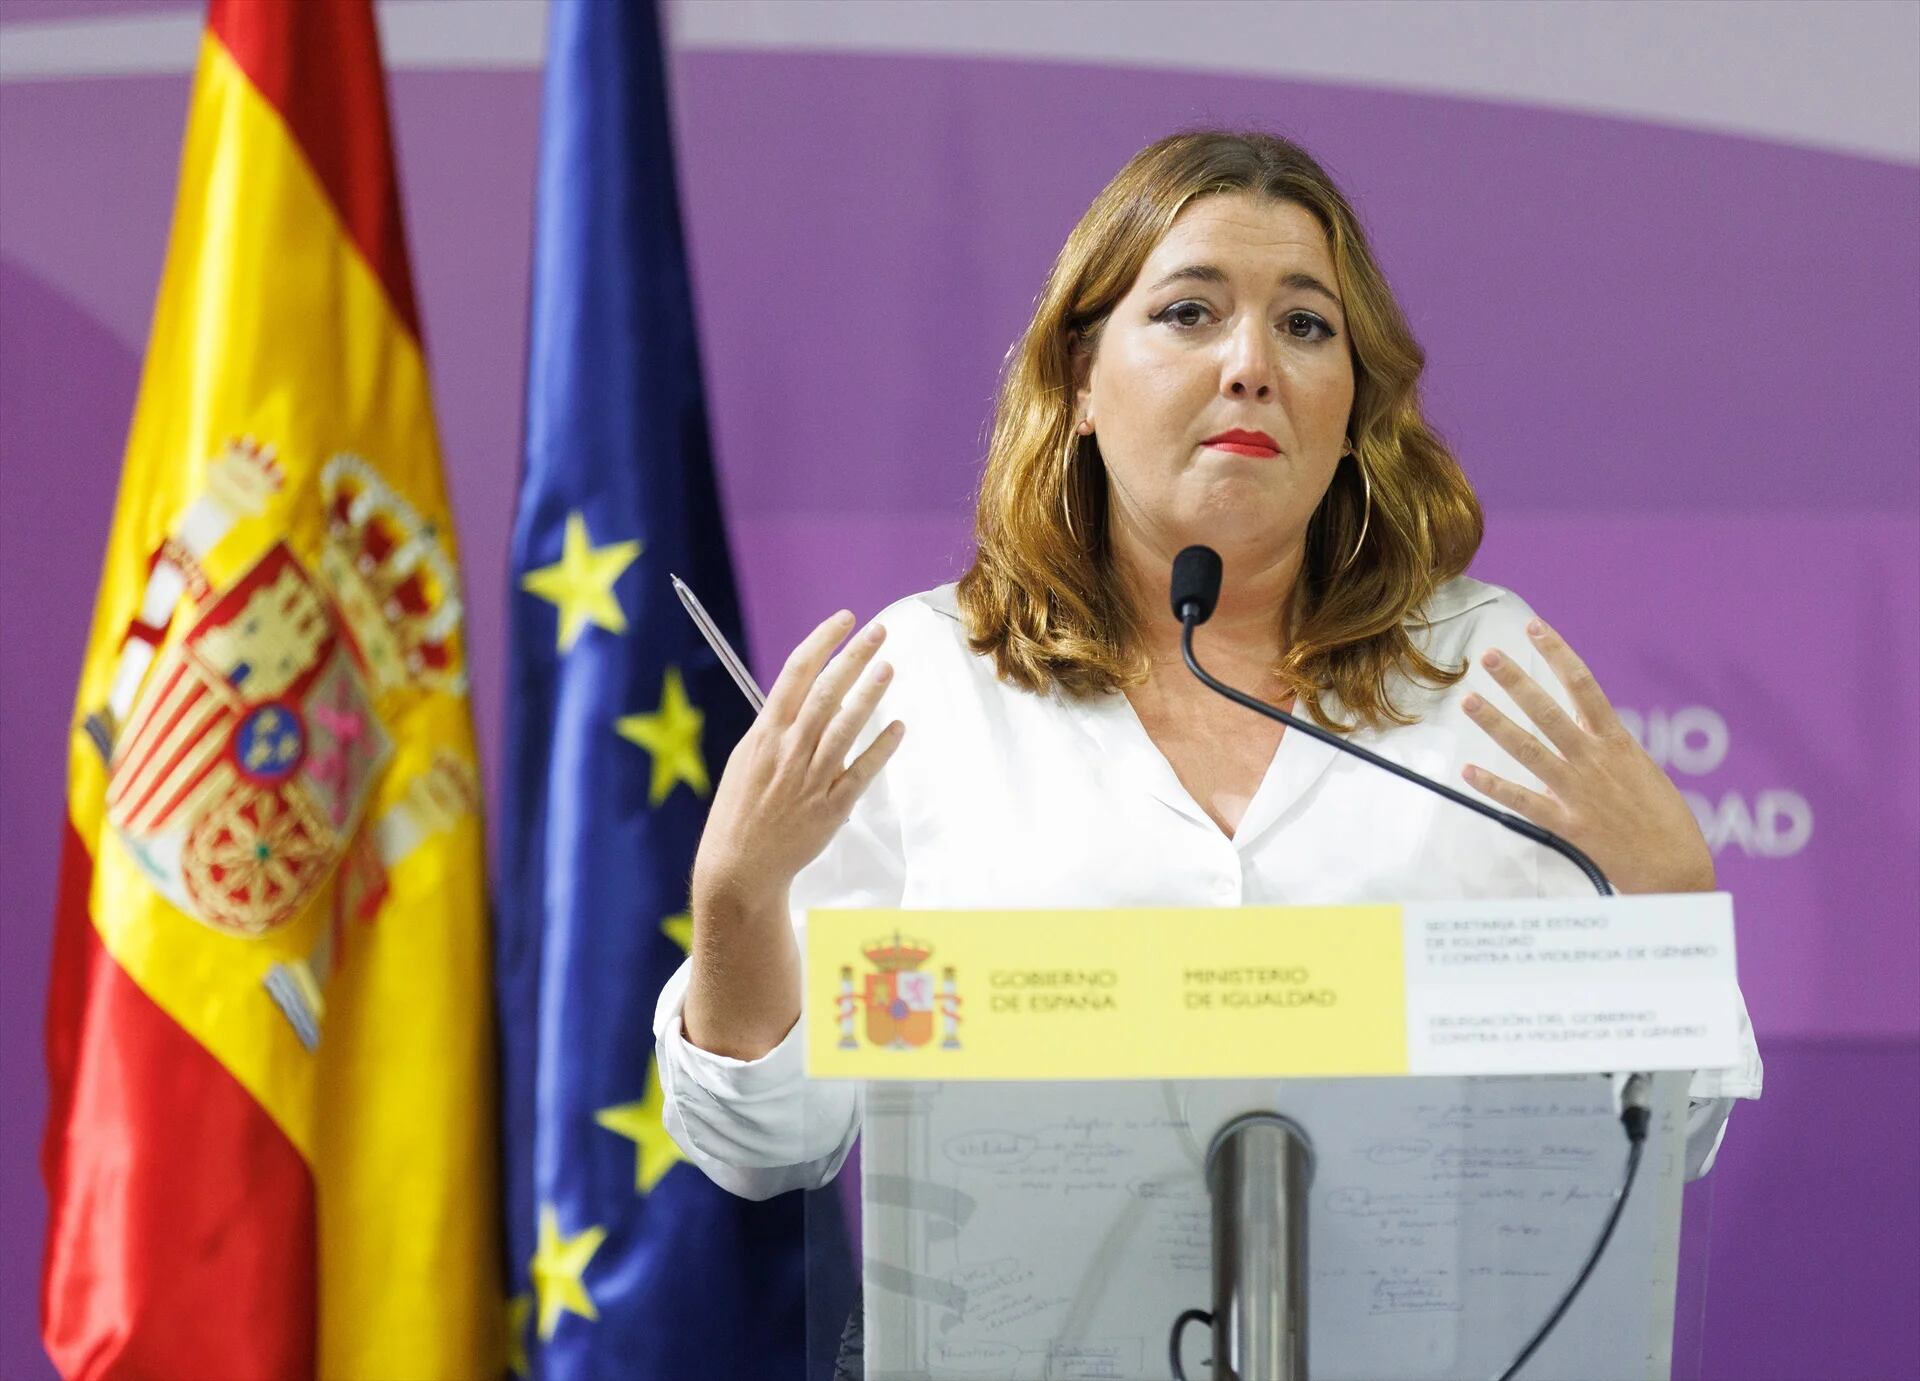 Igualdad pide “romper el silencio cómplice de los agresores” para acabar con la violencia machista en España tras 10 feminicidios en septiembre